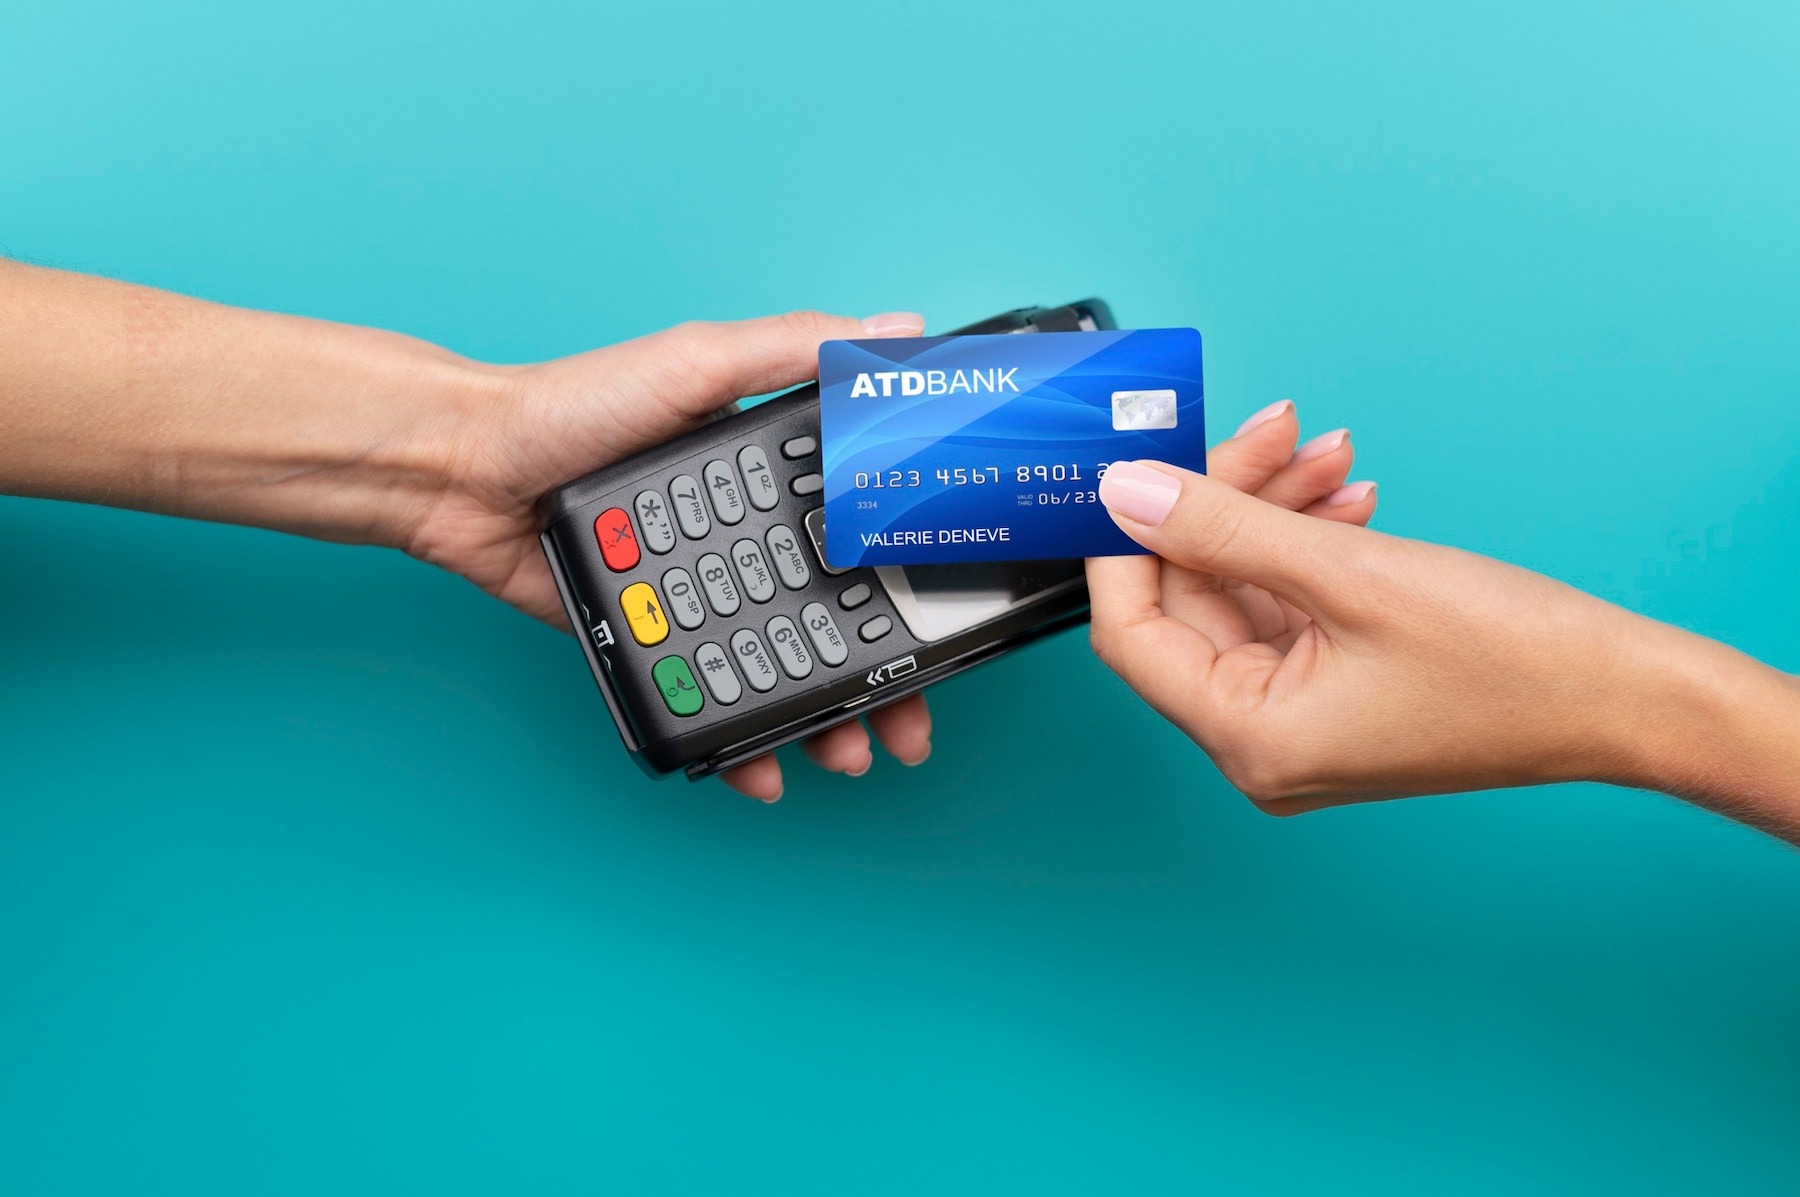 Cum se foloseste corect un card de credit, pentru cumparaturi, ca sa nu ajungi sa platesti dobanzi uriase